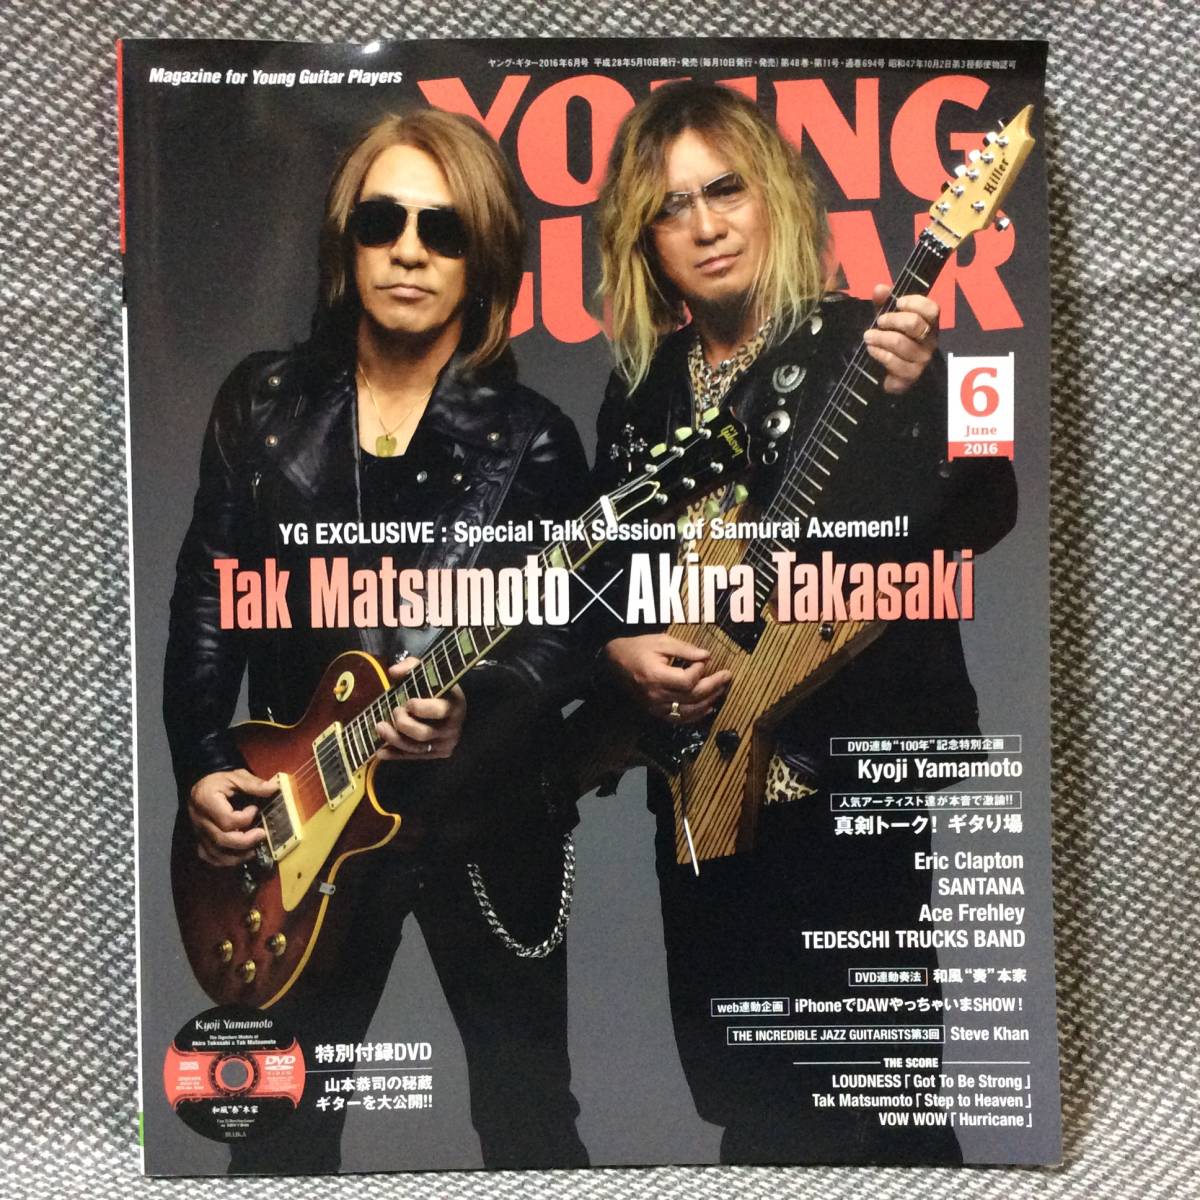  стоимость доставки 210 иен ~ DVD вскрыть завершено *.... изгиб, вмятина и т.п. есть Young гитара 2016 6 месяц номер Takasaki . Matsumoto tak matsumoto Yamamoto ..klap тонн 